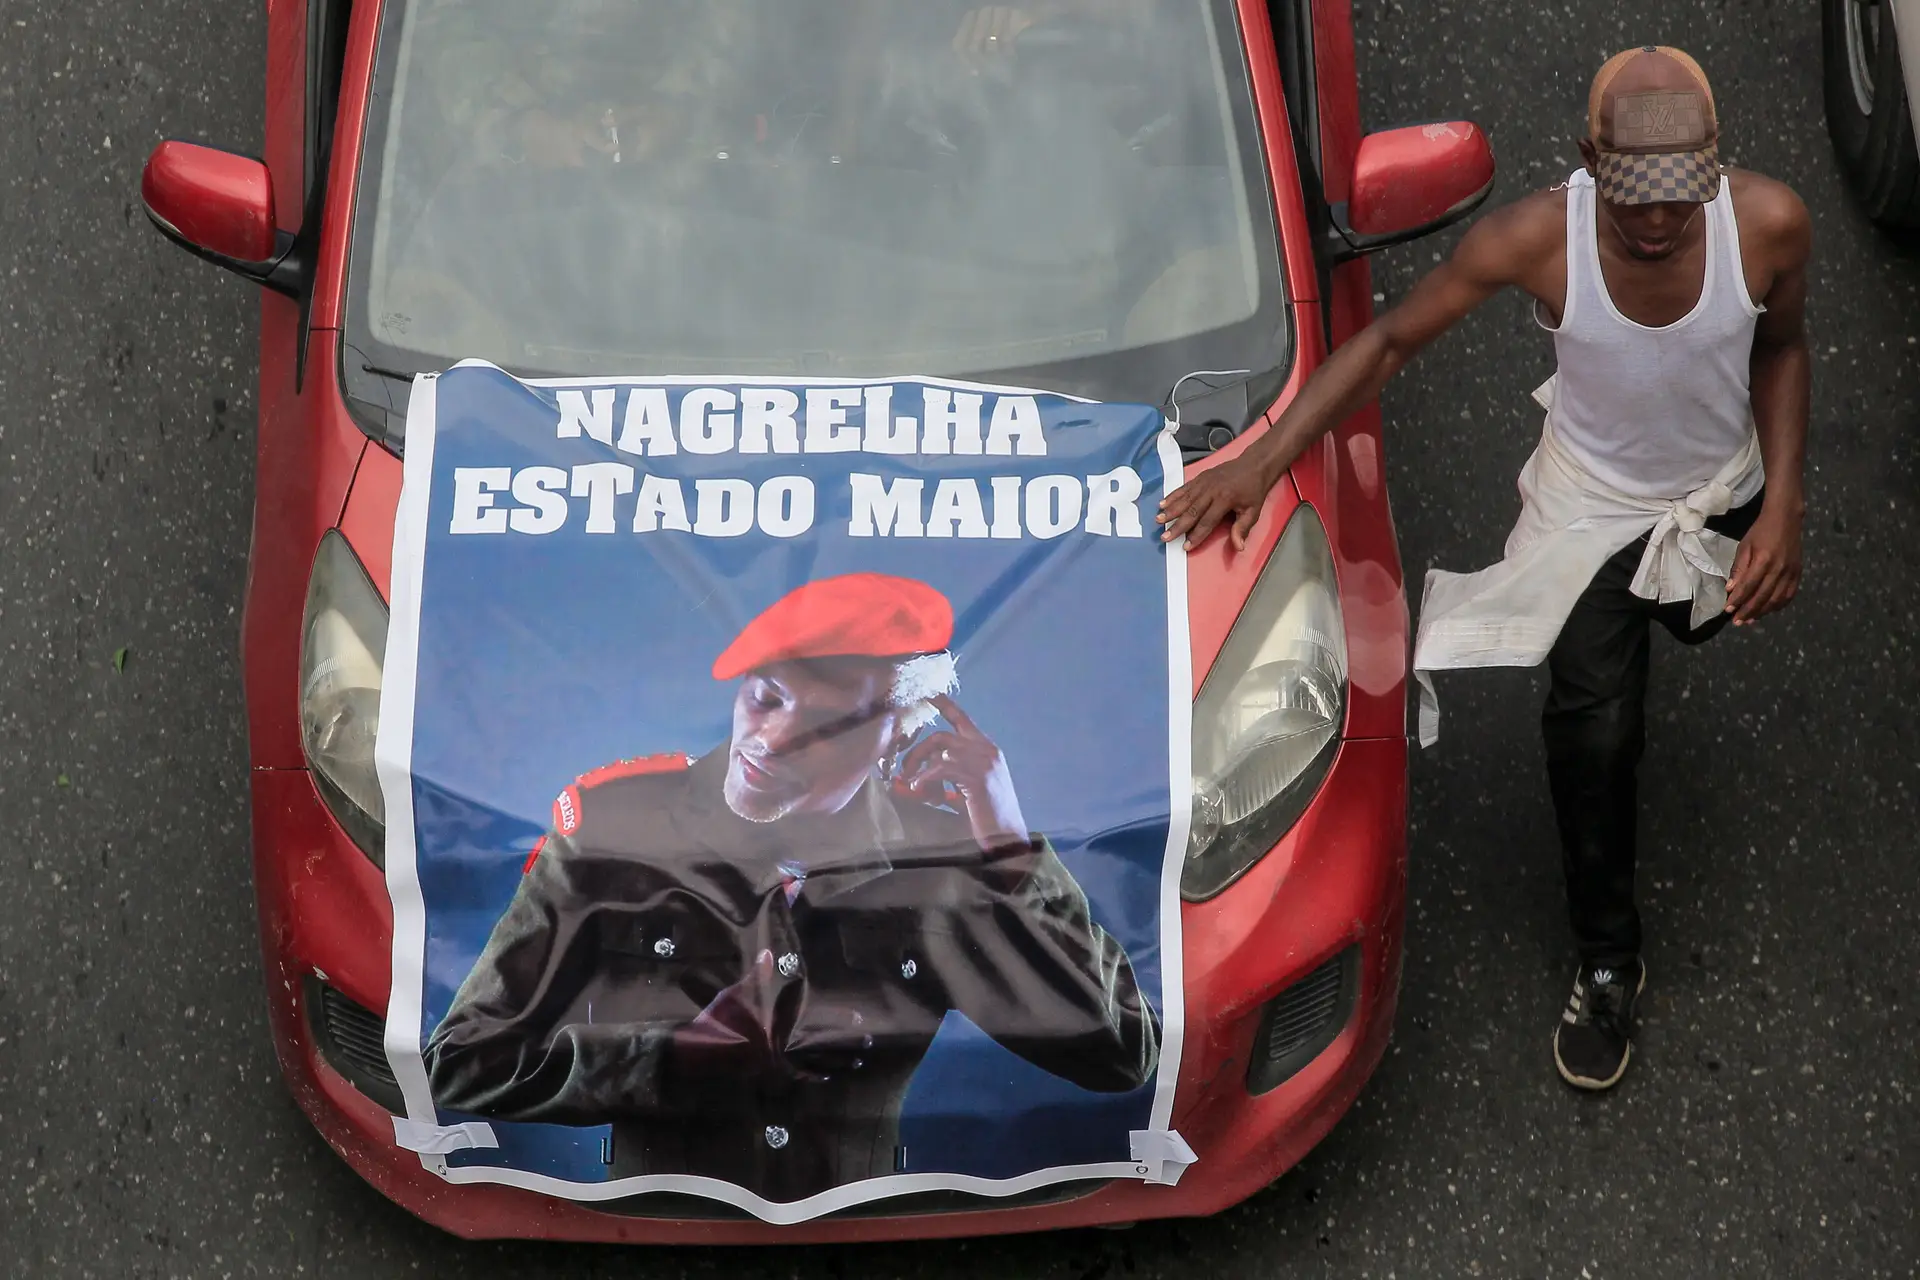 Um morto e mais de 30 feridos no funeral do músico "Nagrelha" em Luanda